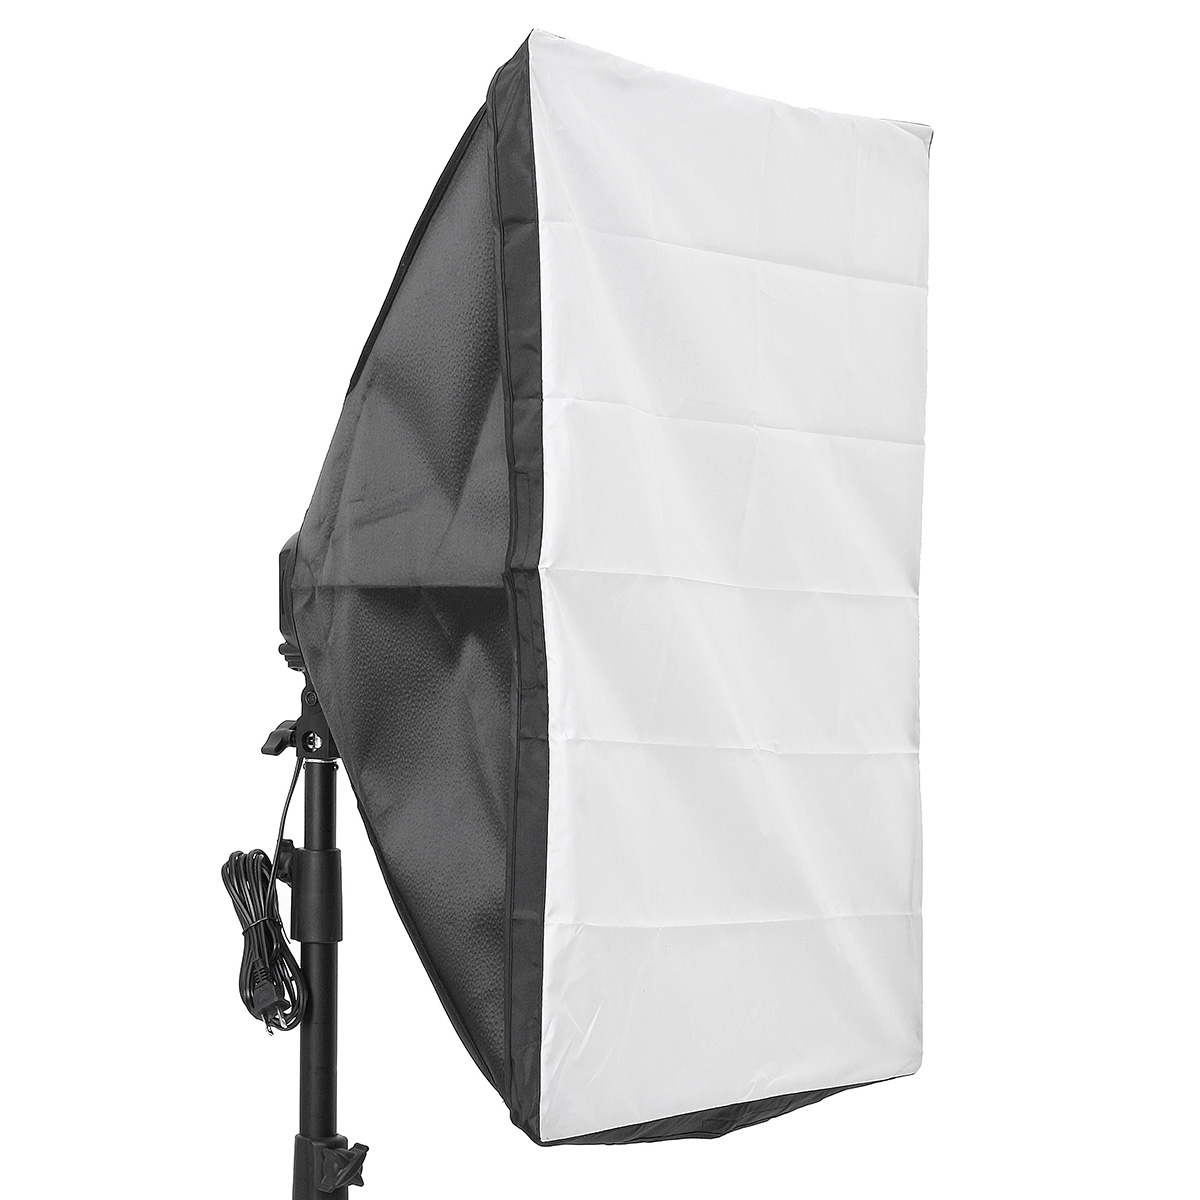 

Photo Video Studio Lighting 50x70cm Softbox Light4 Socket E27 Lamp Holder Kit